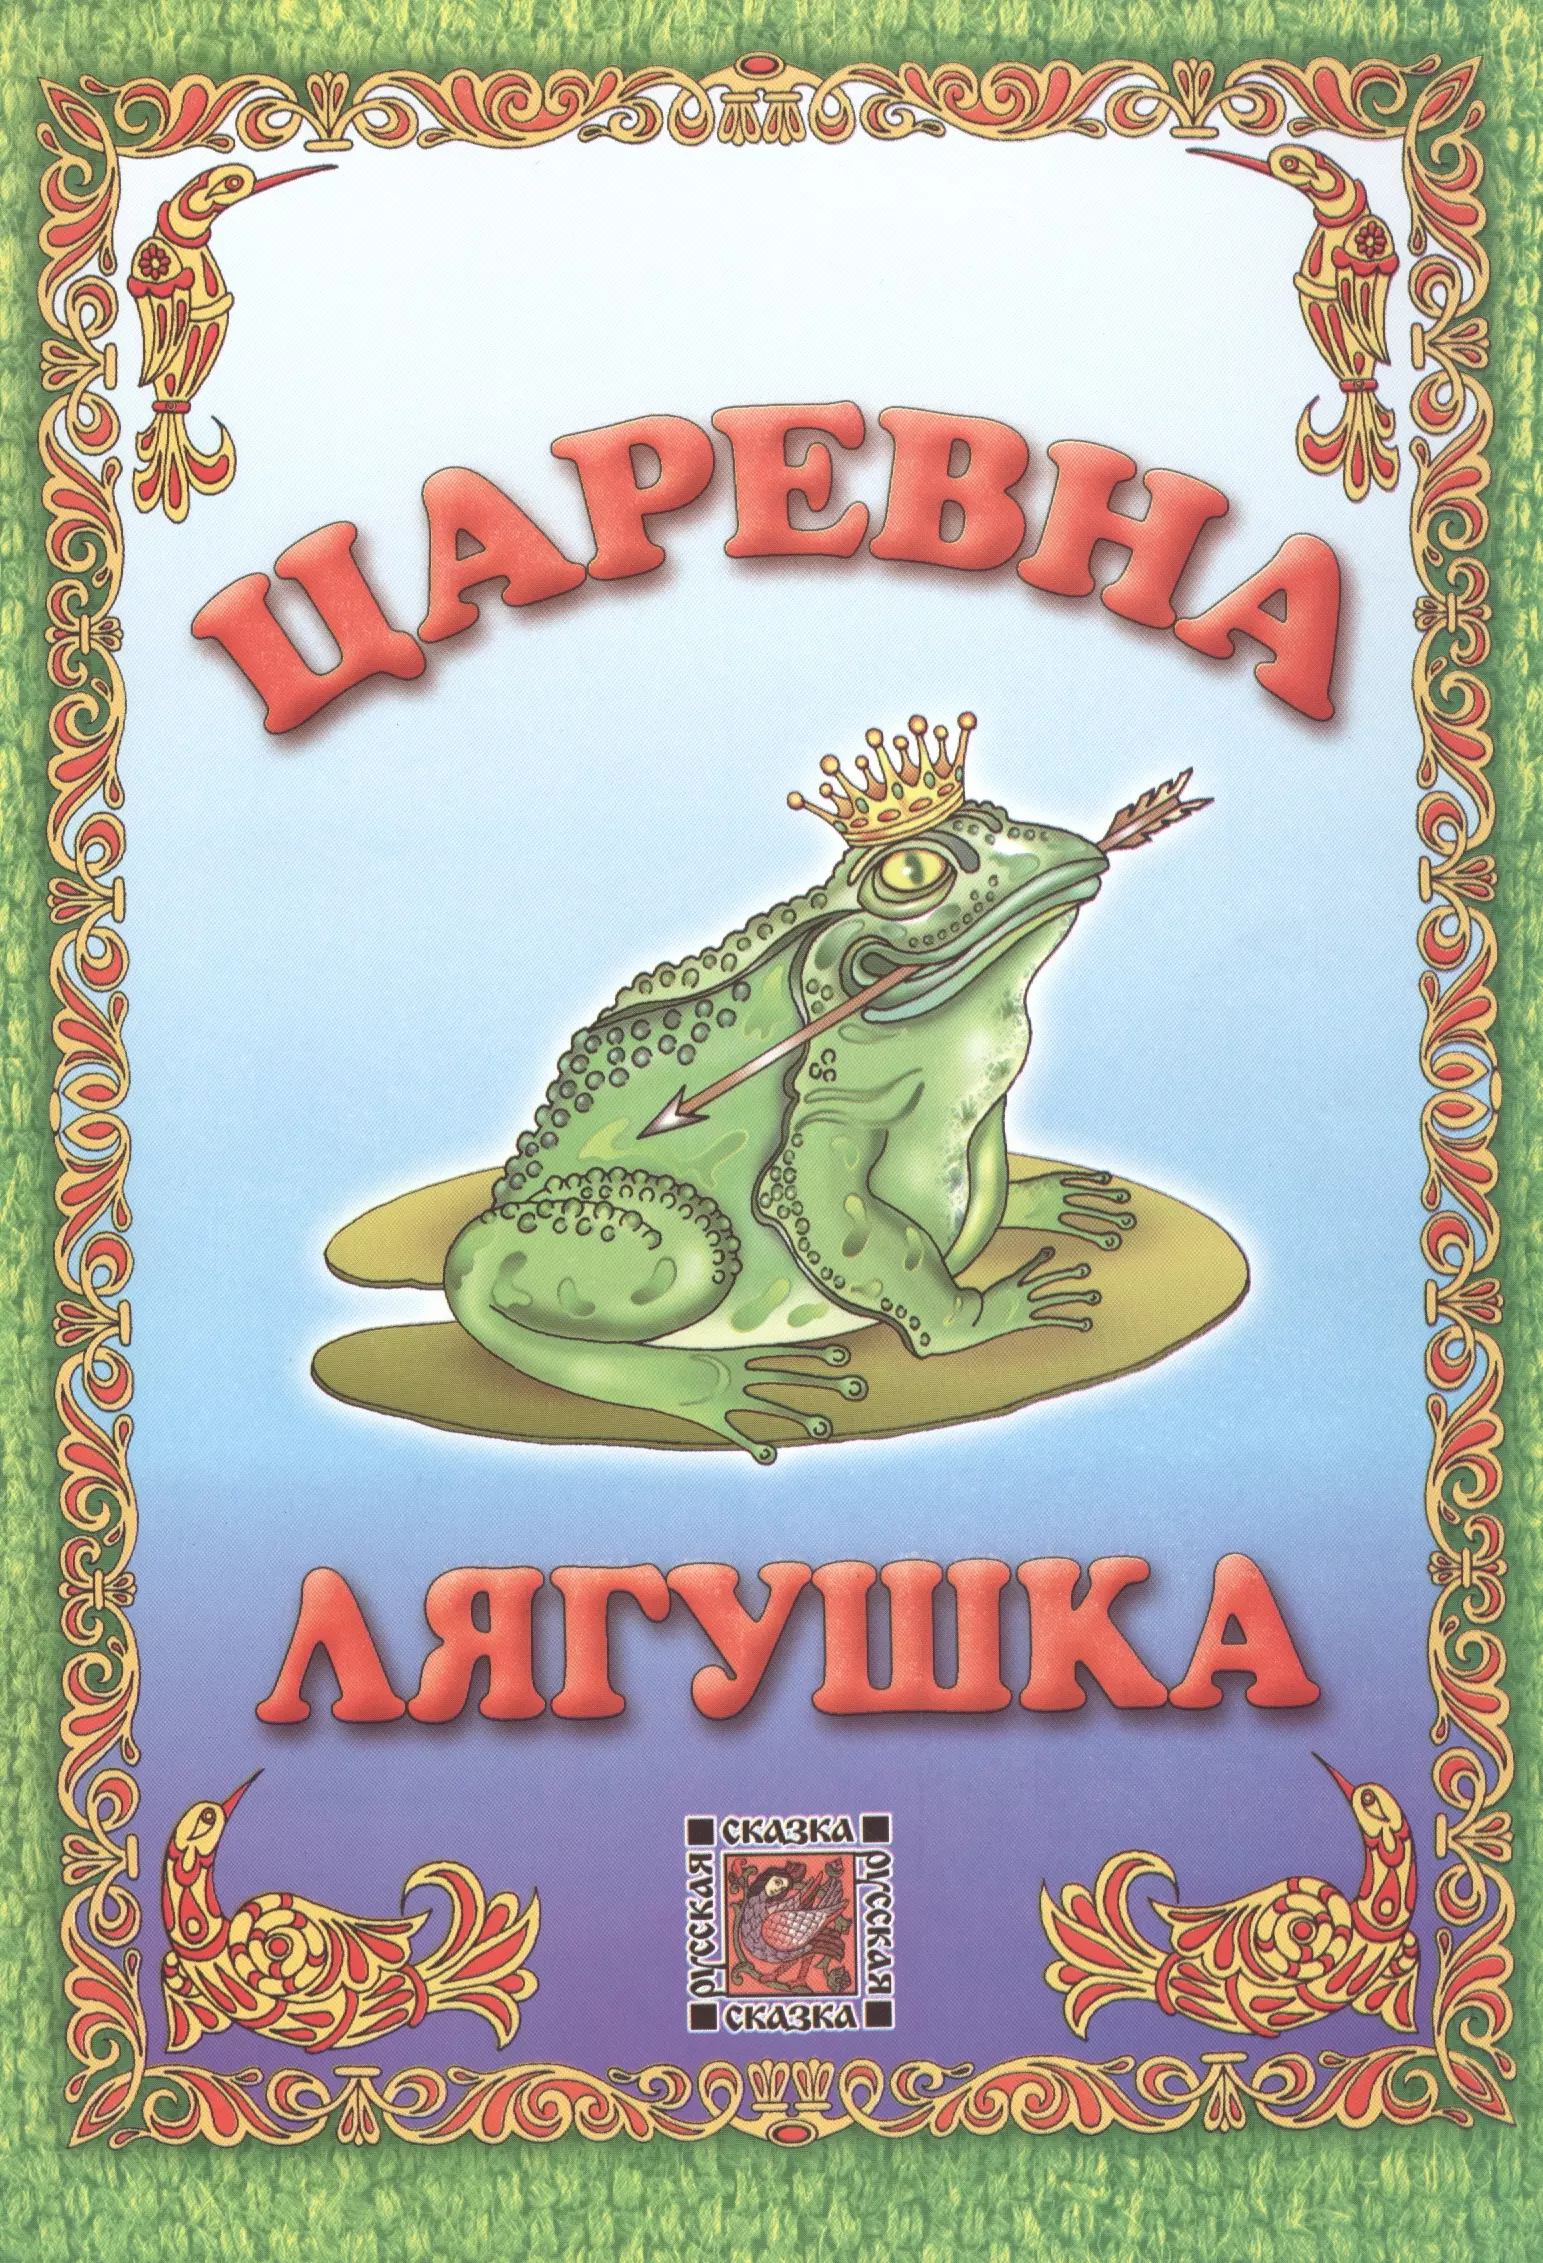 Царевна-лягушка несмеяна царевна русская народная сказка